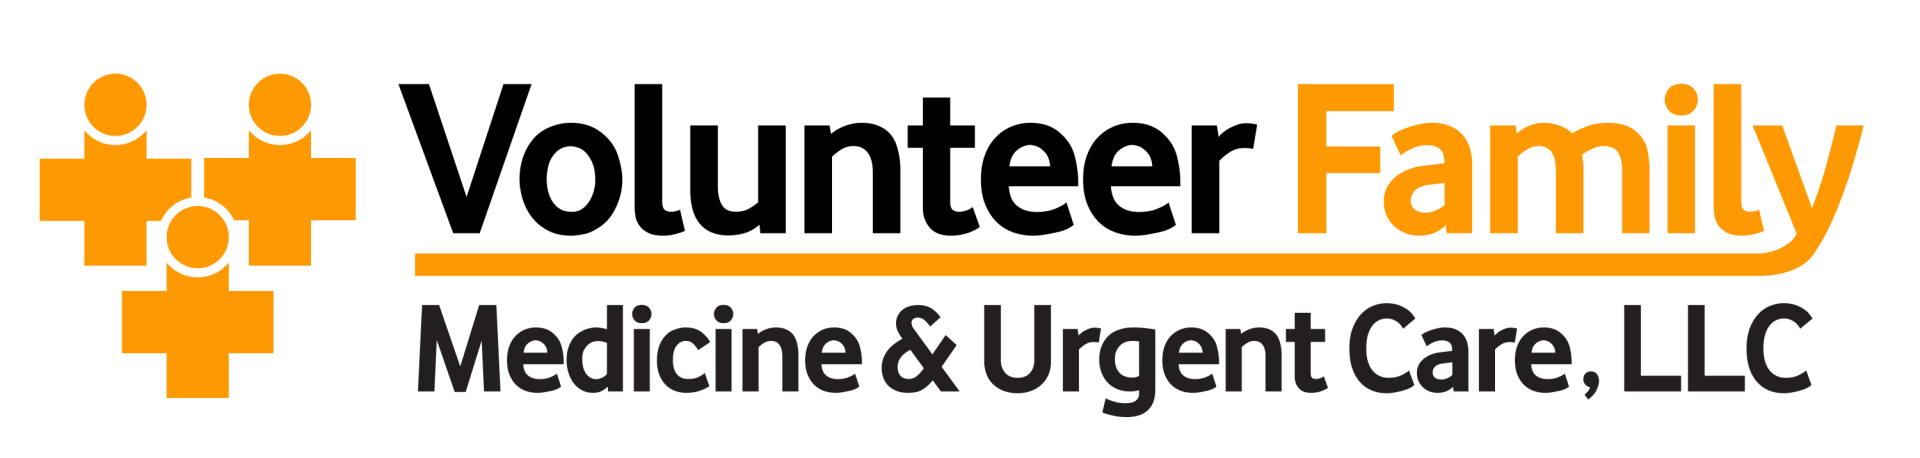 Volunteer Family Medicine & Urgent Care, LLC